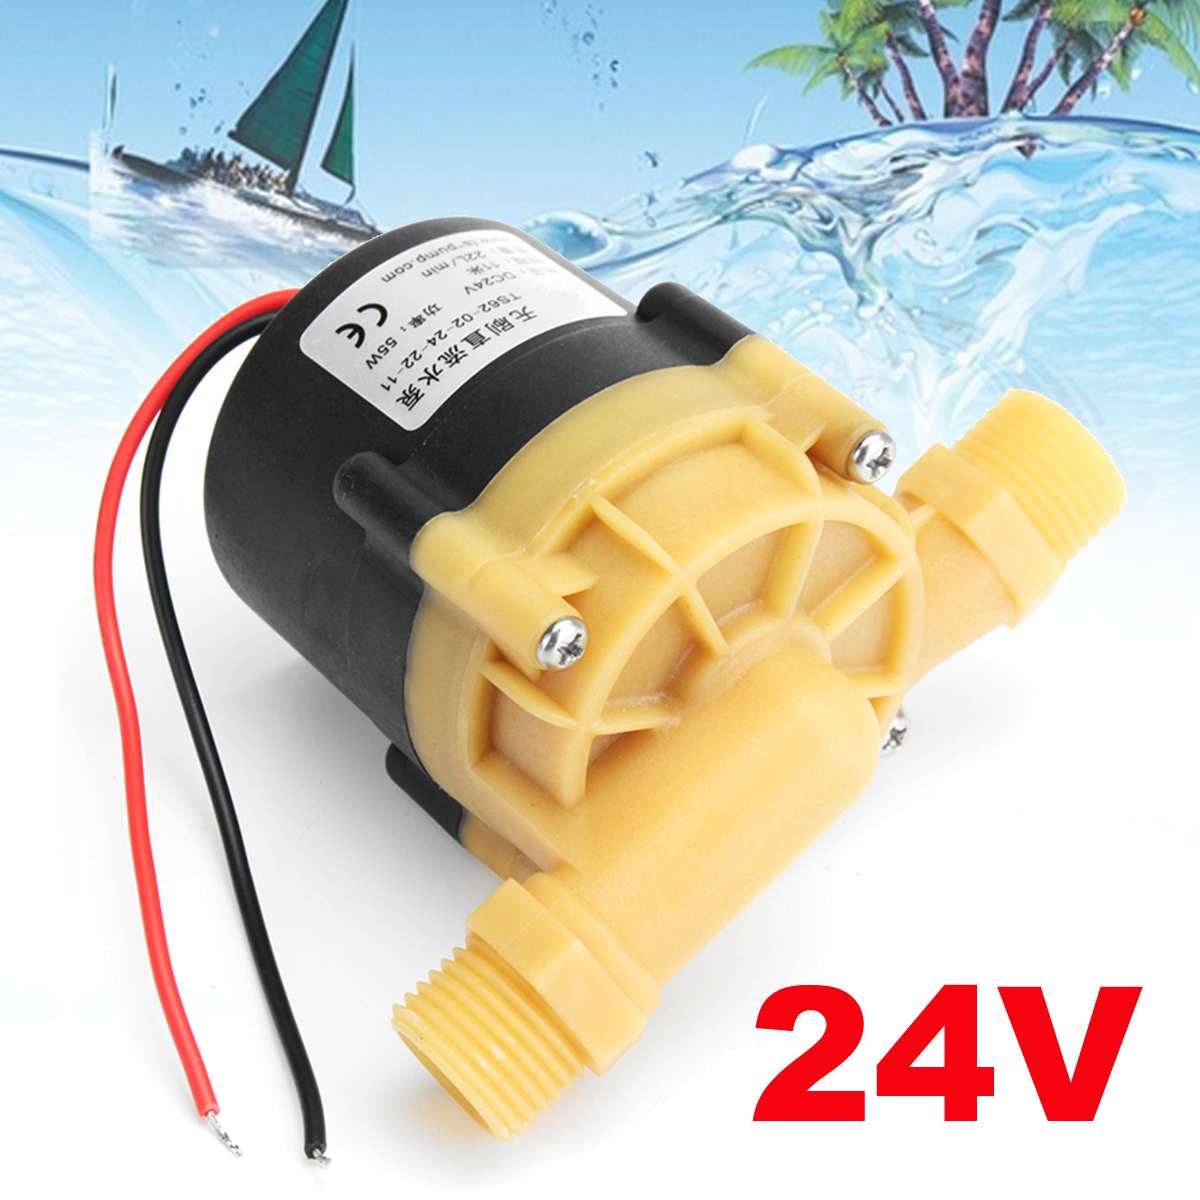 Borstelloze Dc 24V 55W 22L/Min Waterpomp Mini Booster Pomp 1.5A 11M Voor Chiller machine En Led Licht Pomp